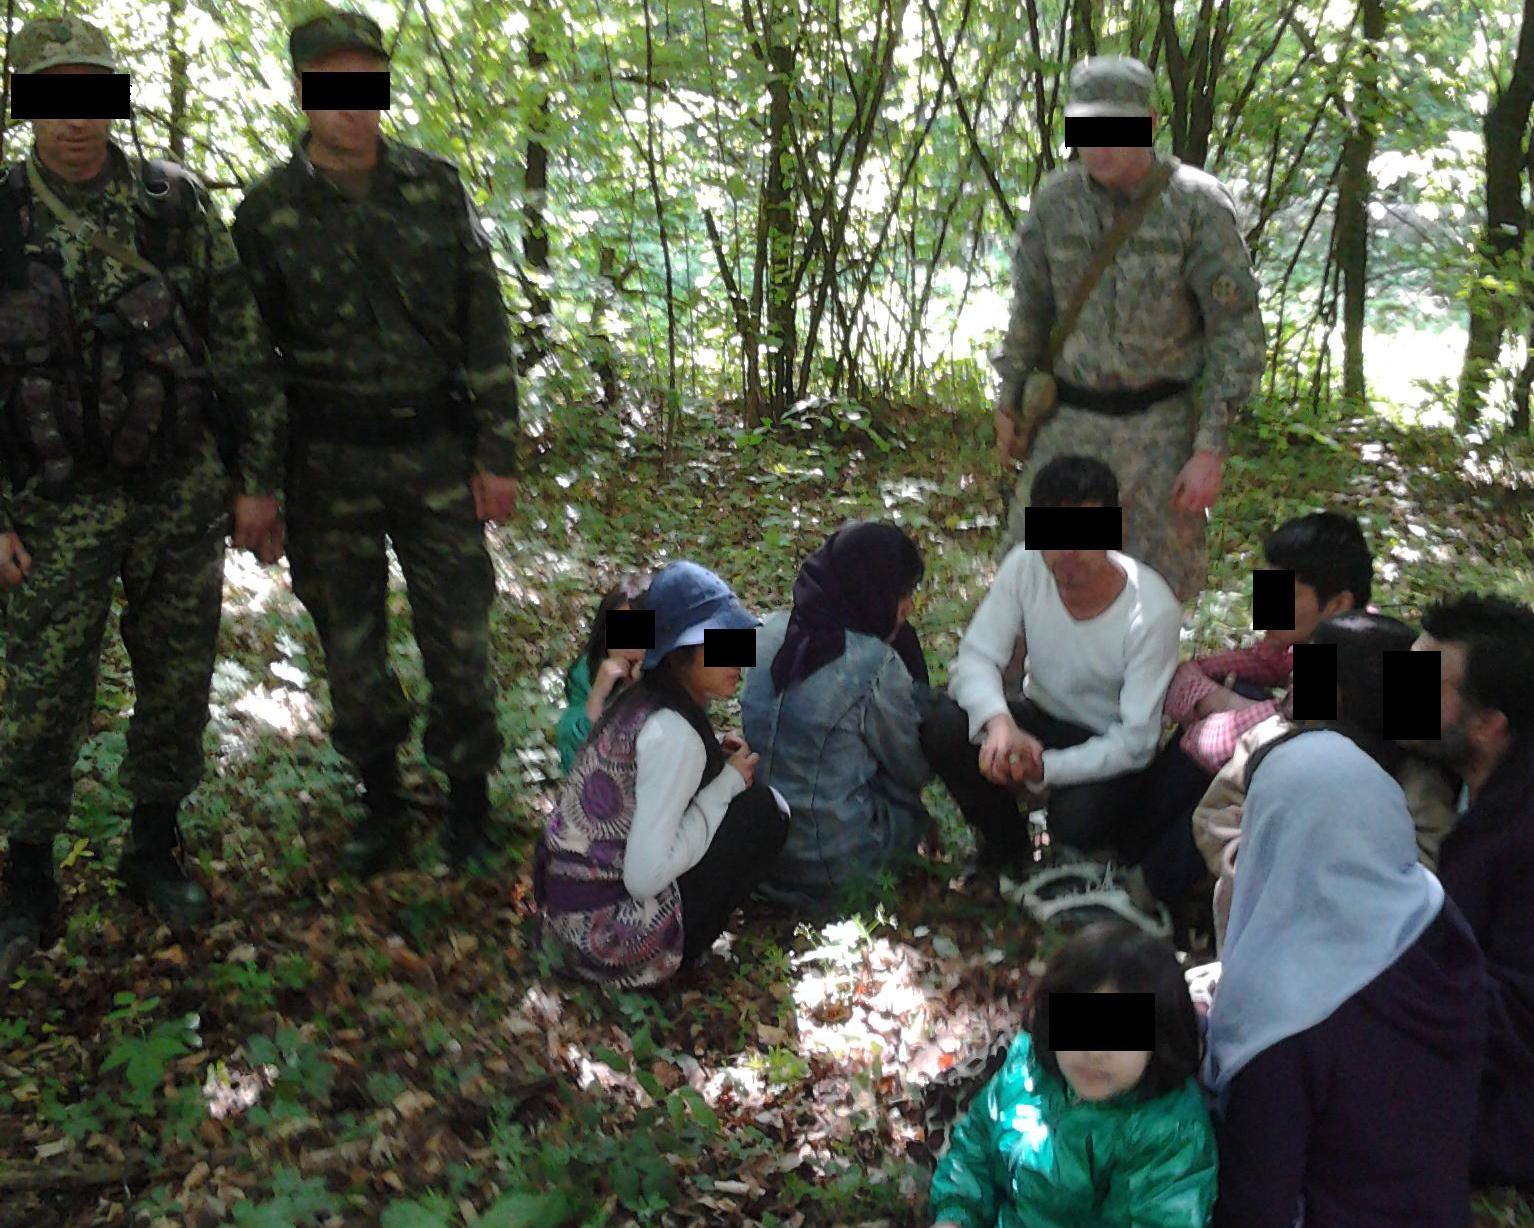 На Закарпатті затримали велику родину "нелегалів" із 3 малолітніми дітьми та ймовірними наркотиками, які прямували до Словаччини (ФОТО)